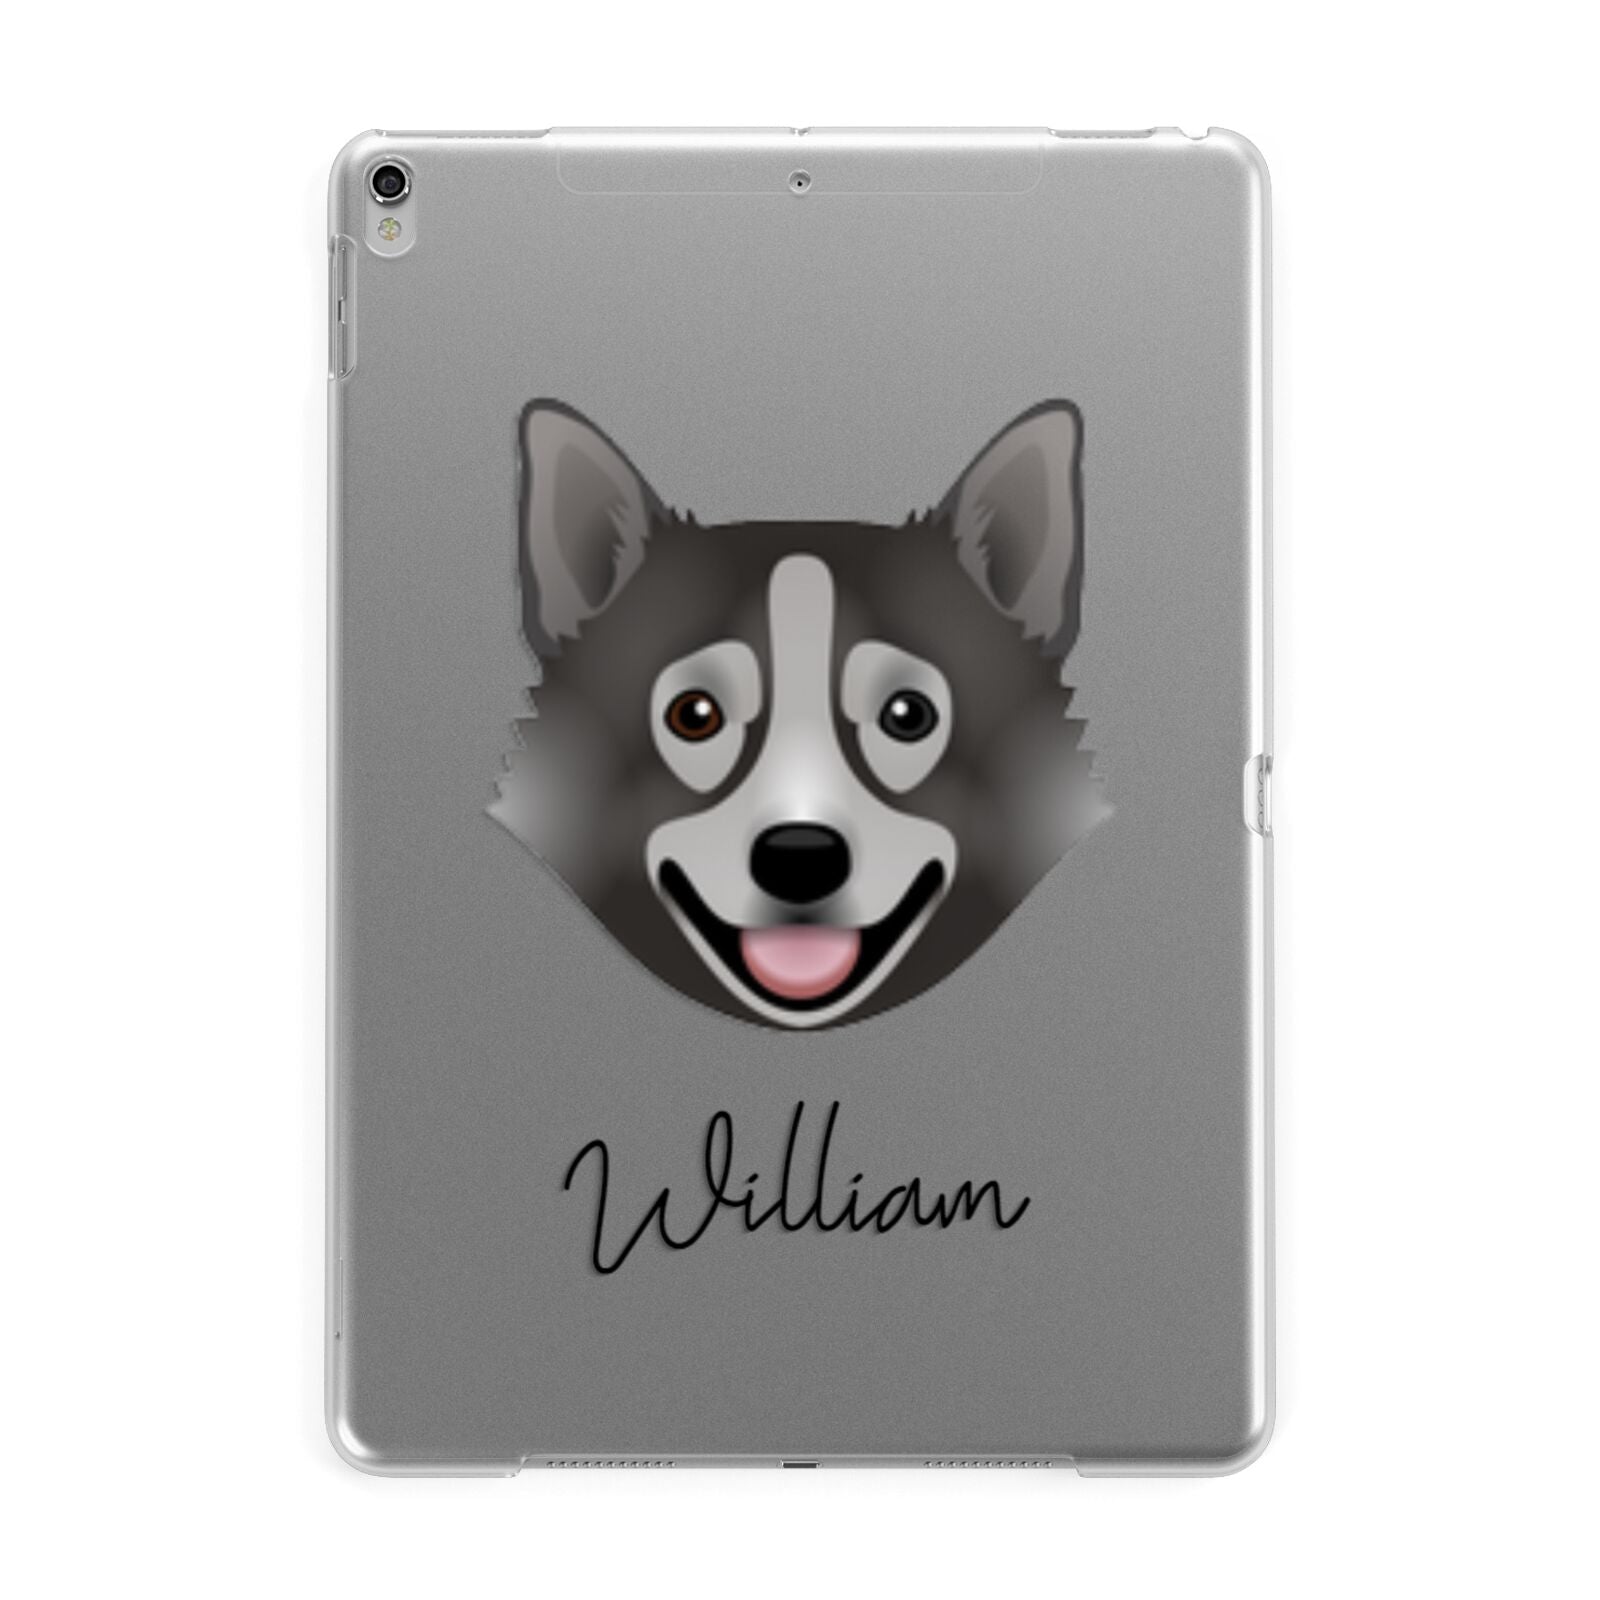 Swedish Vallhund Personalised Apple iPad Silver Case